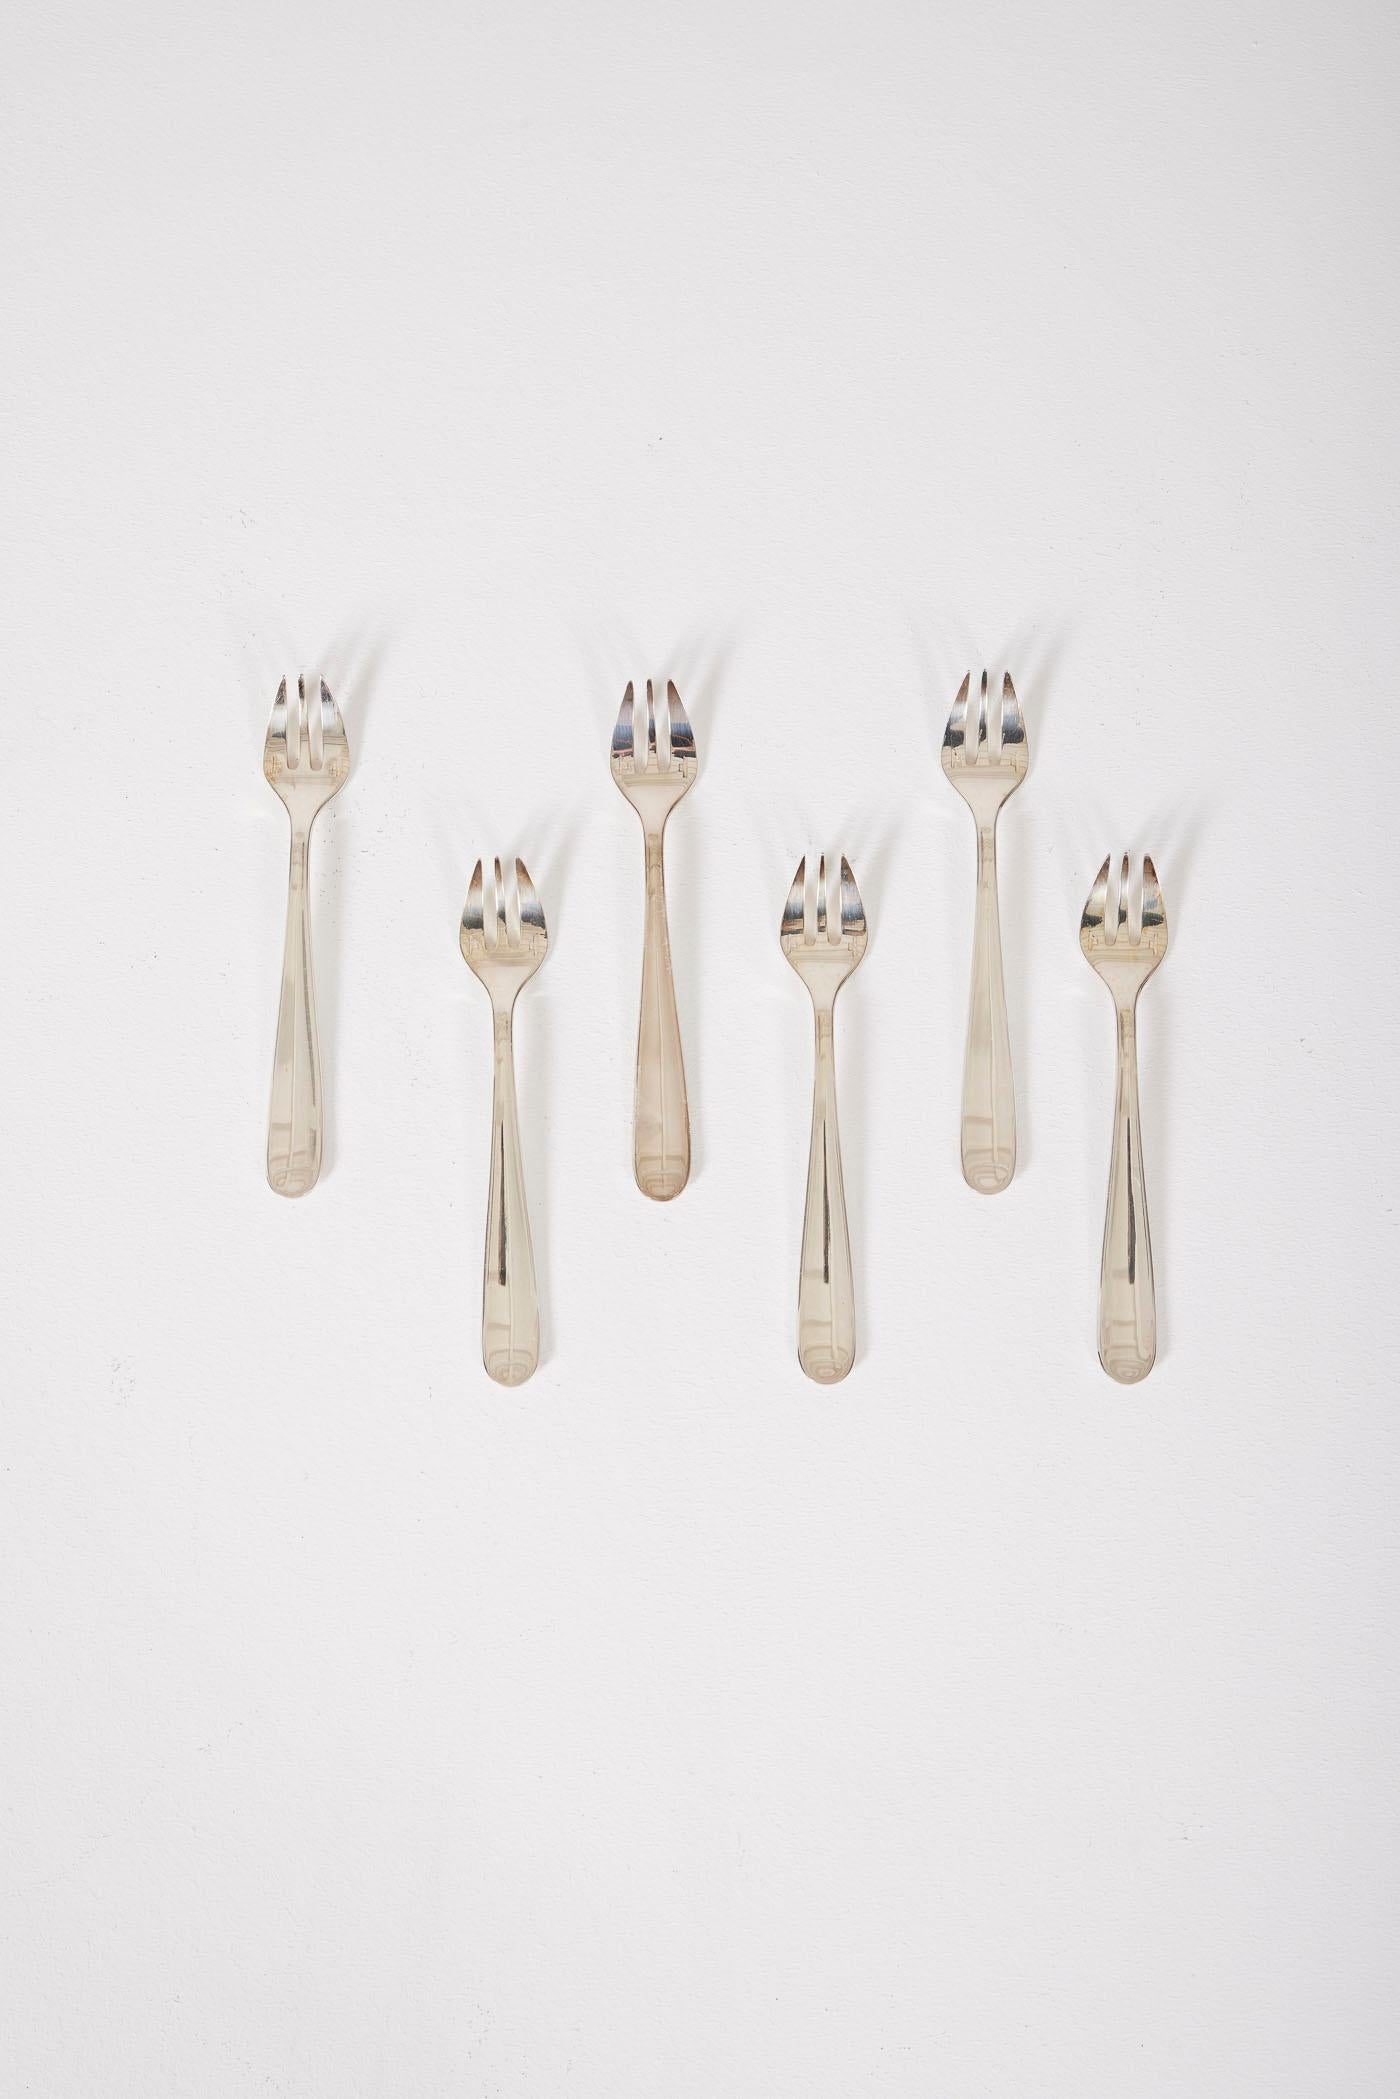 Set de 6 fourchettes à huîtres en métal argenté estampillé par Christofle. En bon état.
LP2136